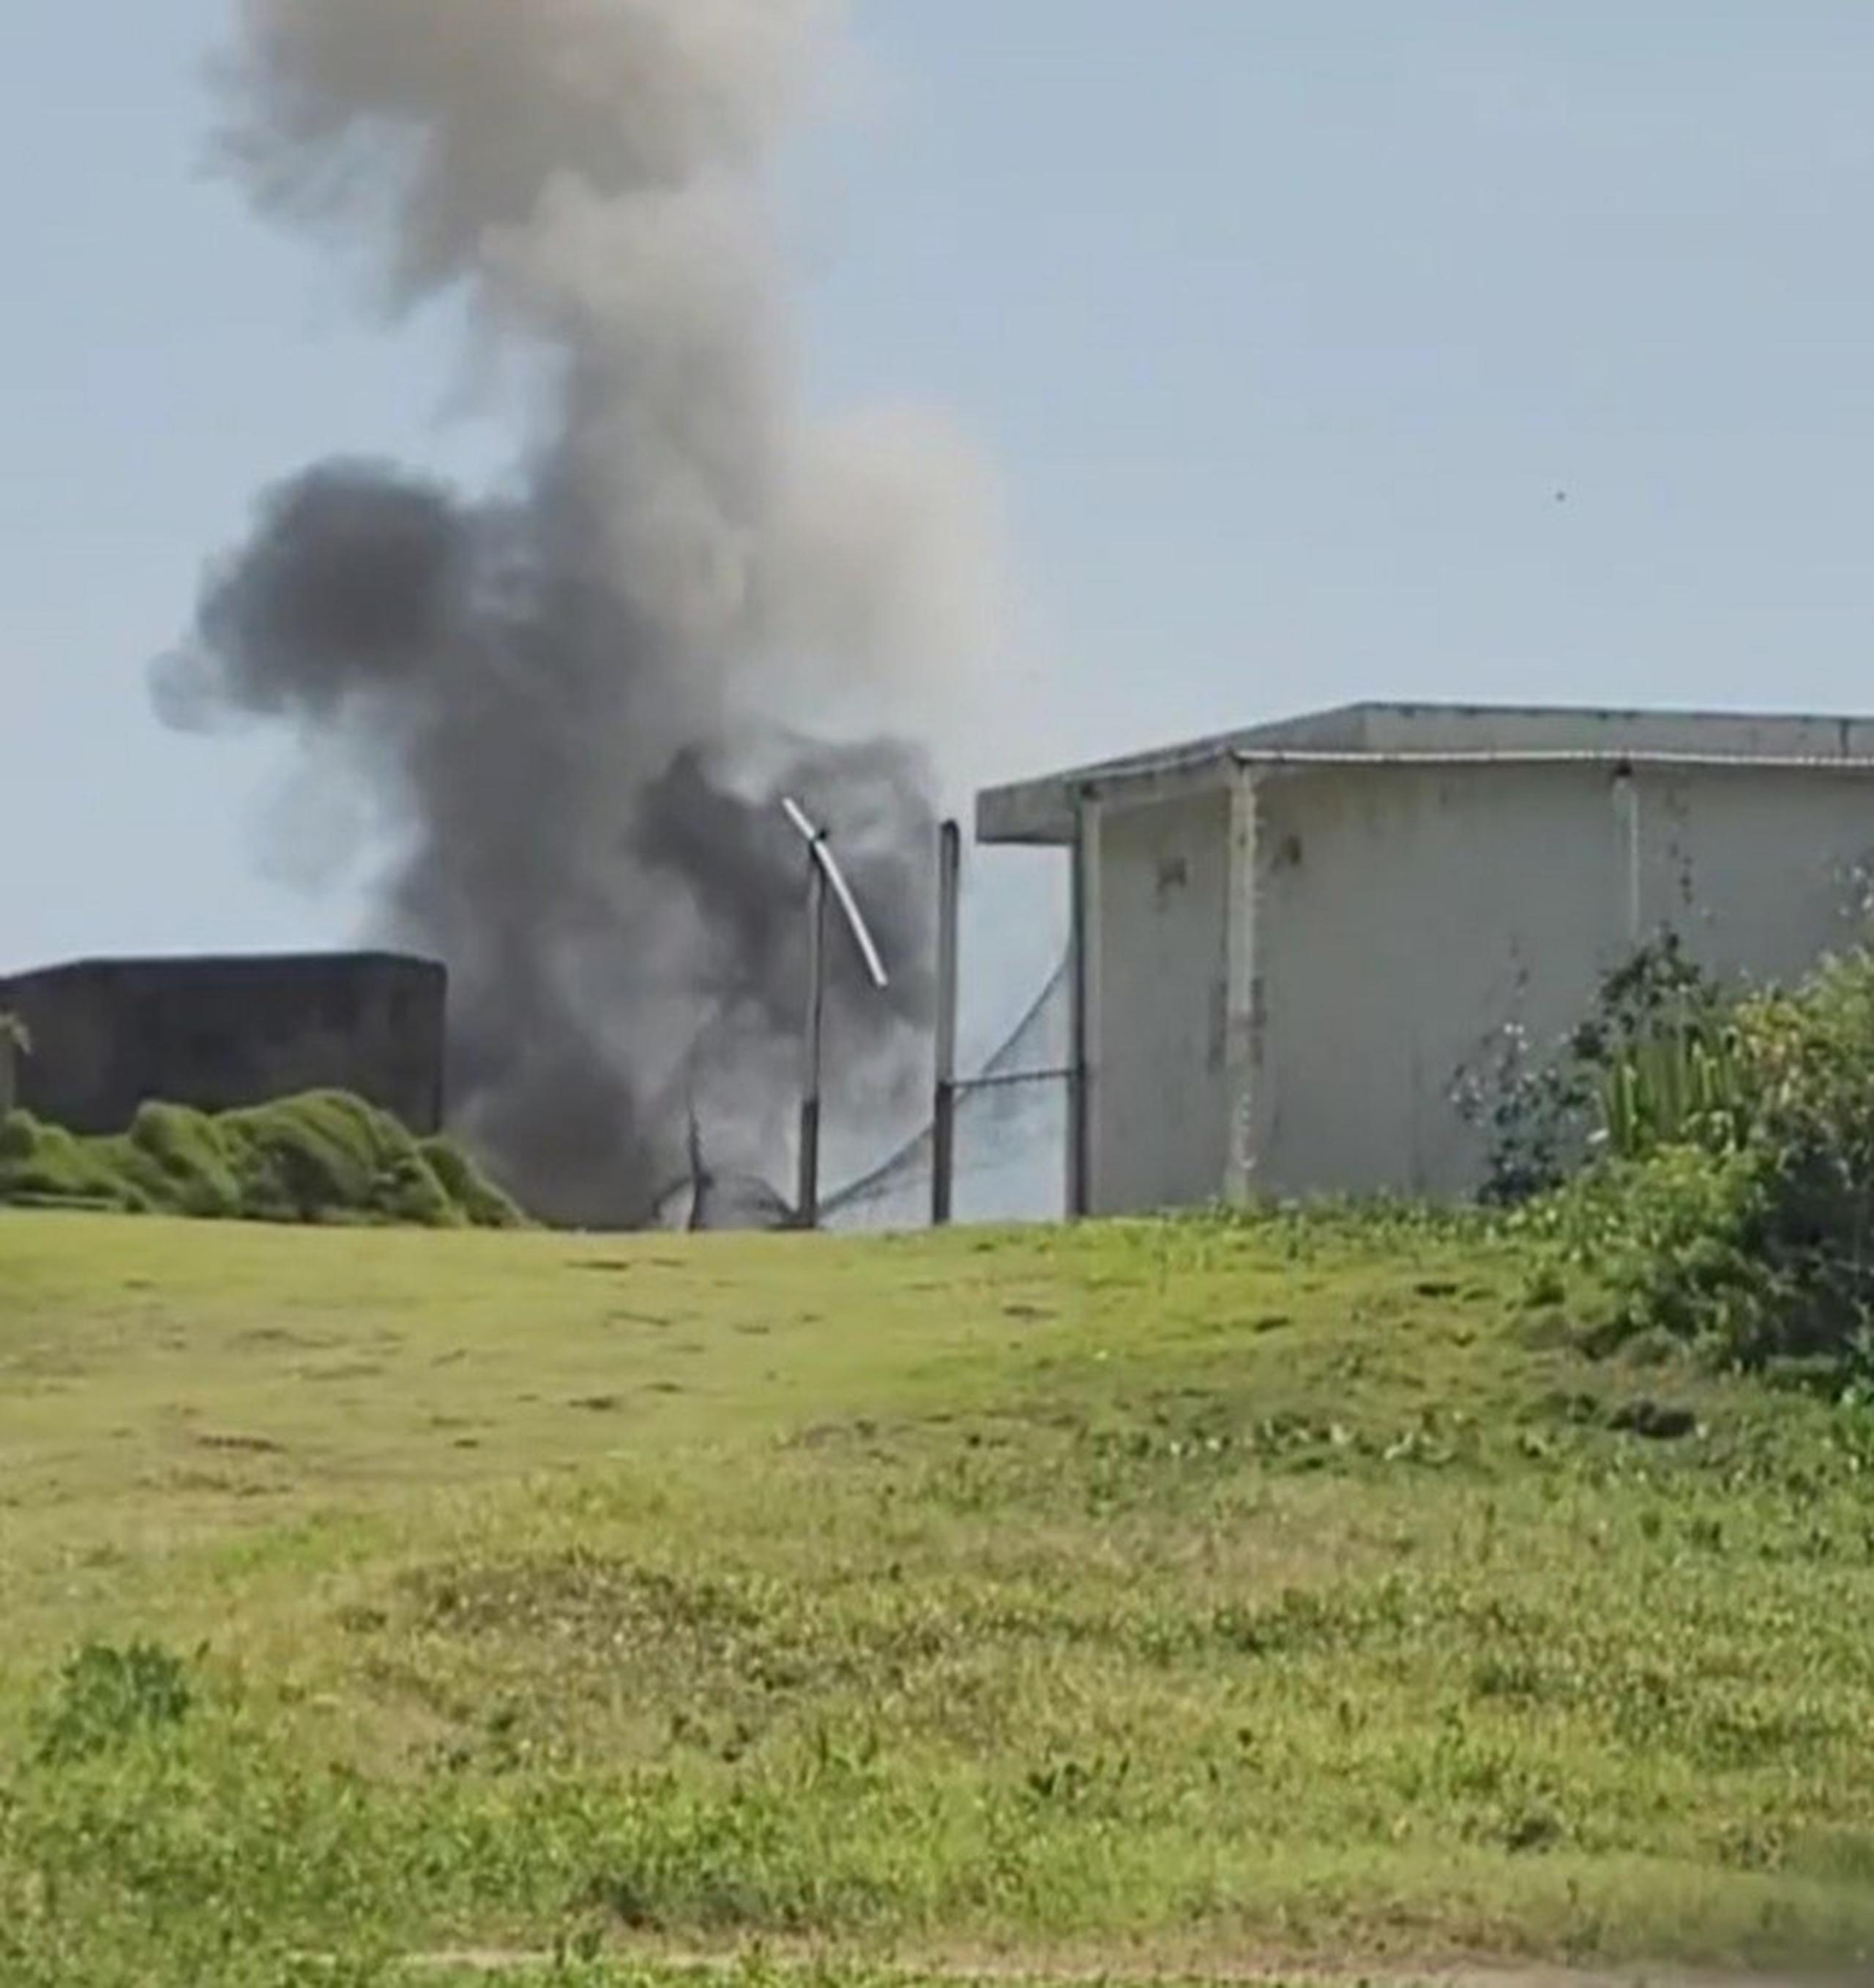 La División de Explosivos y Seguridad Pública efectuó un ejercicio de detonación controlada de una bola de cañón en los predios de Isla de Cabras.